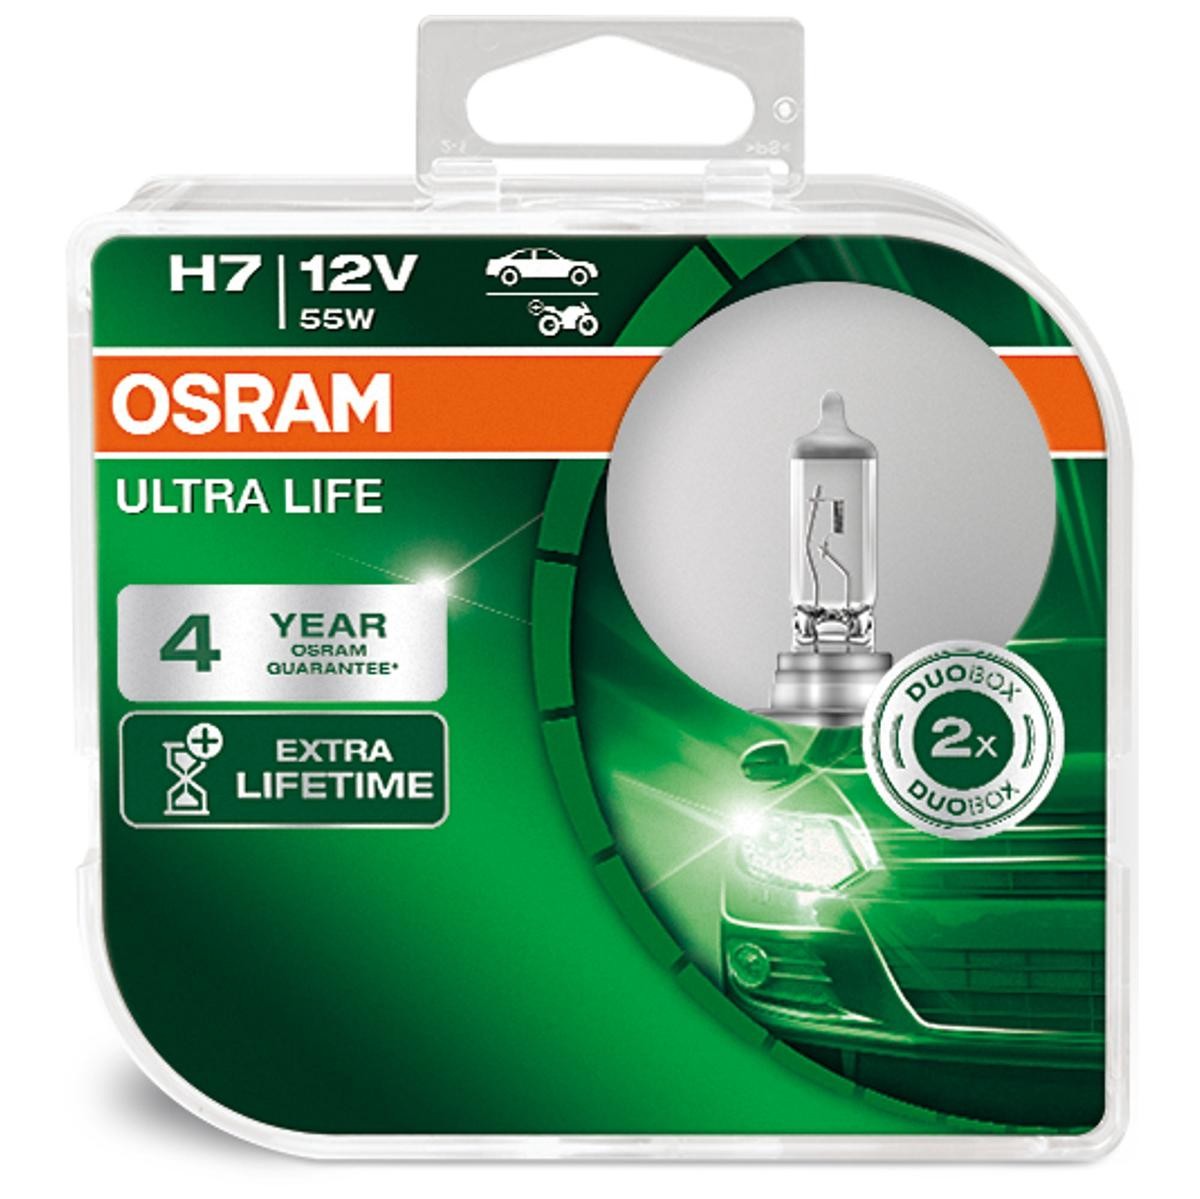 H7 OSRAM ULTRA LIFE H7 12V 55W PX26d, 3800K, Halogen Main beam bulb 64210ULT-HCB buy